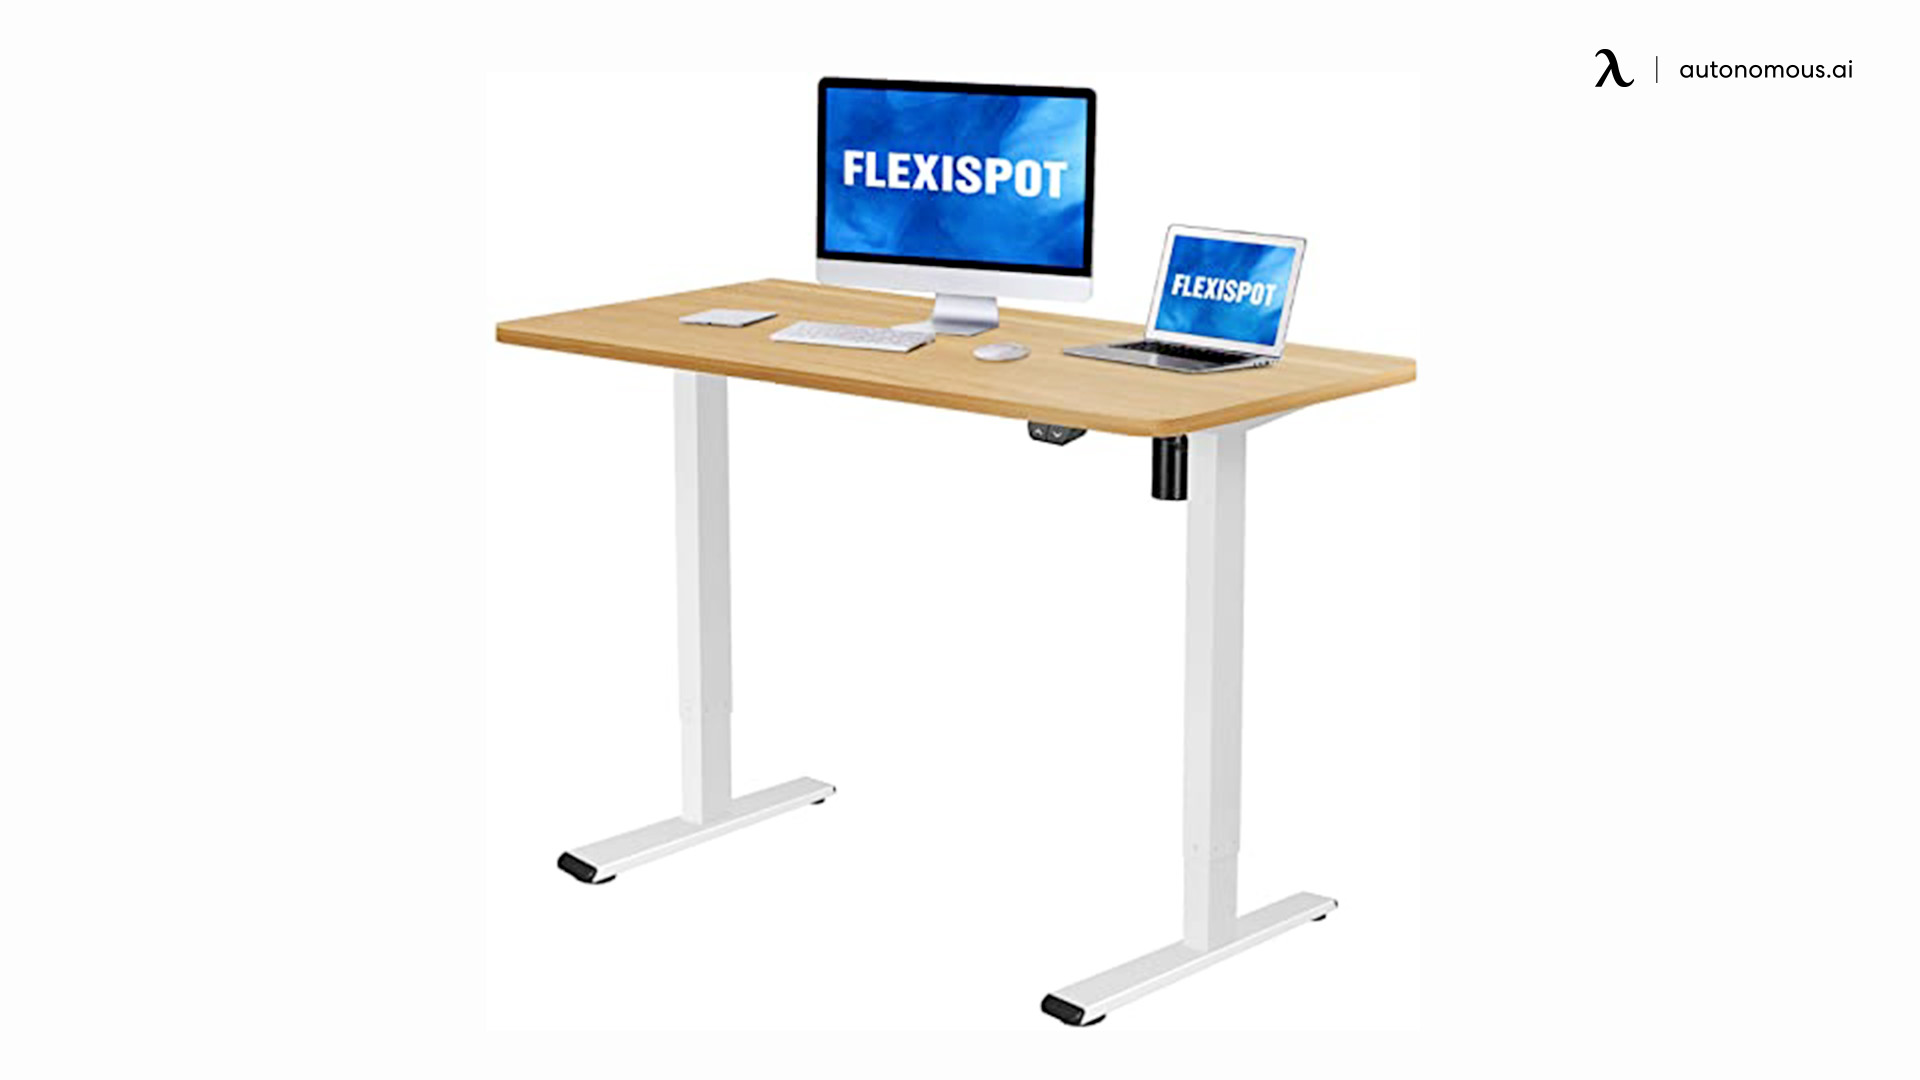 FlexiSpot’s Electric Height Adjustable Standing Desk